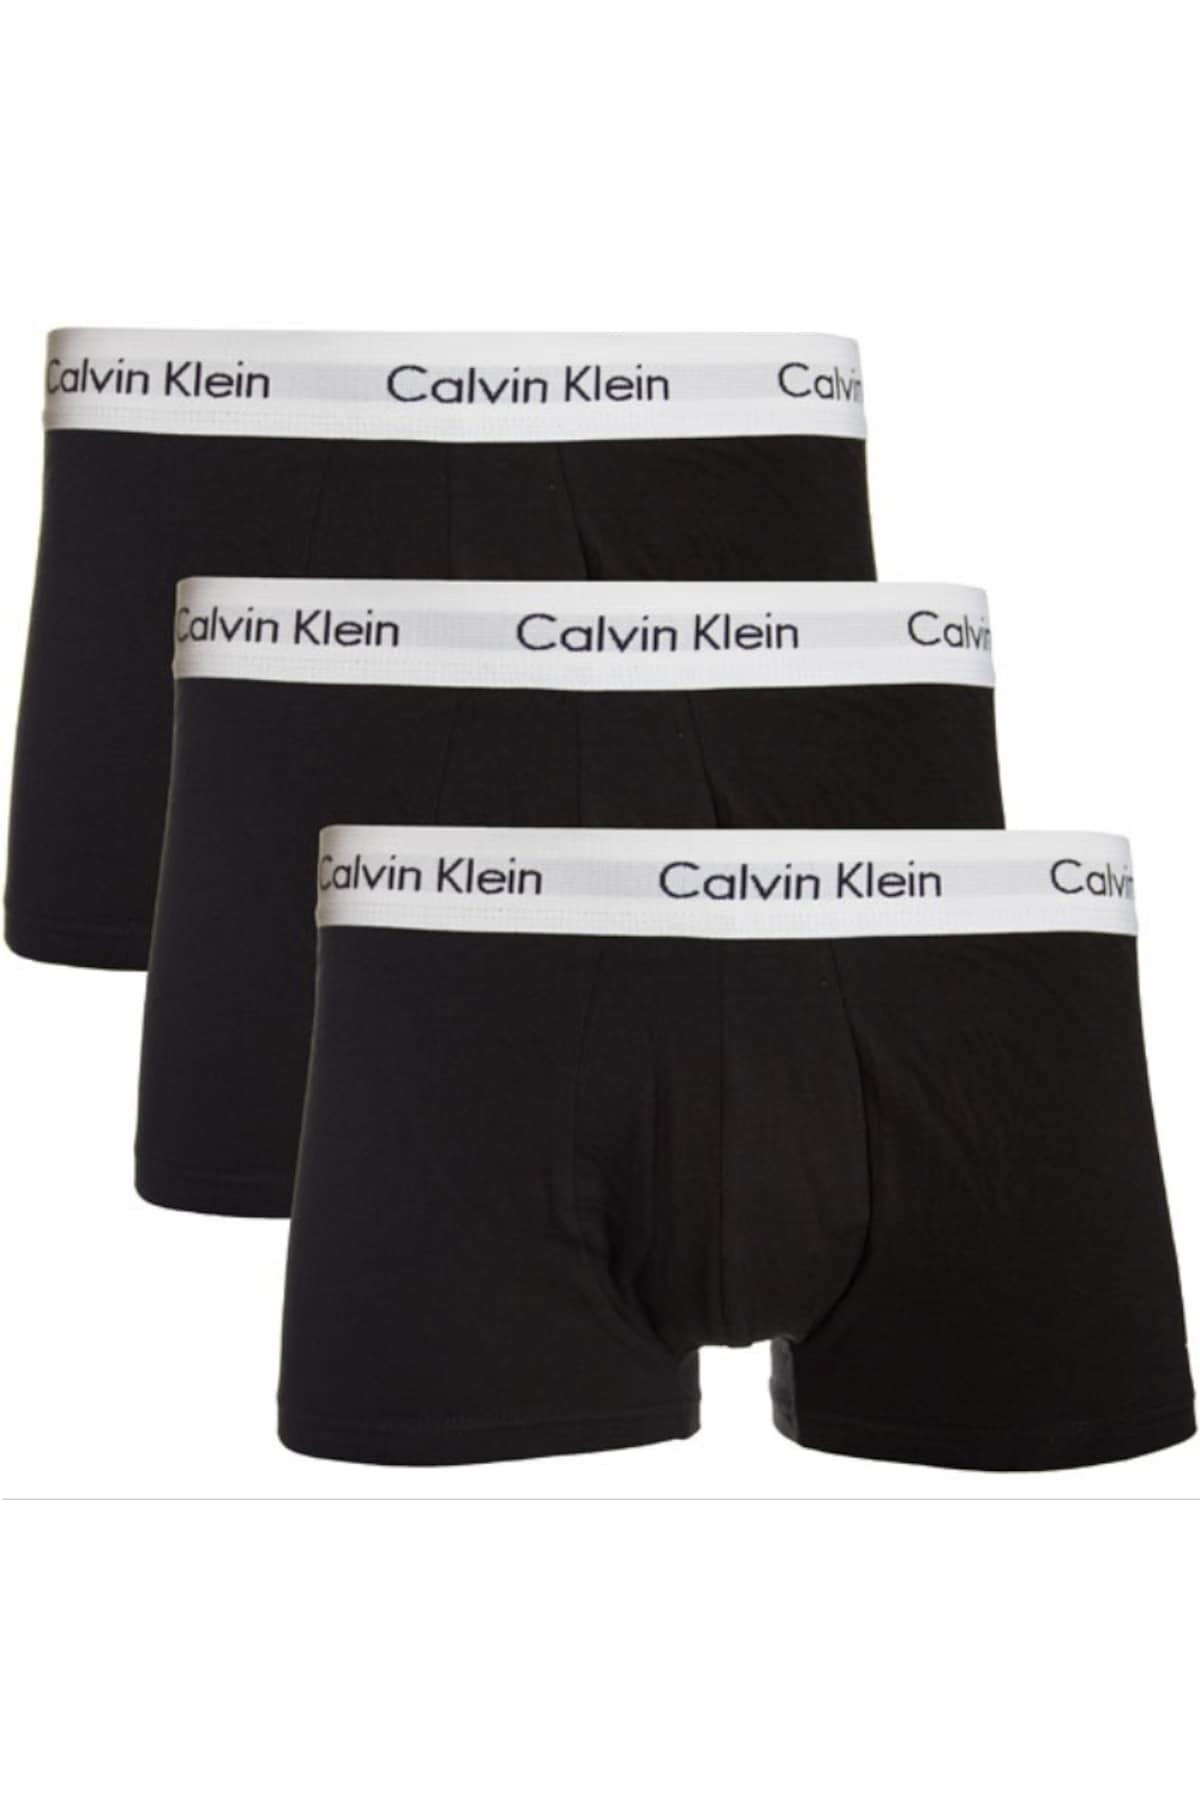  Calvin Klein Boxer Tasarımları  